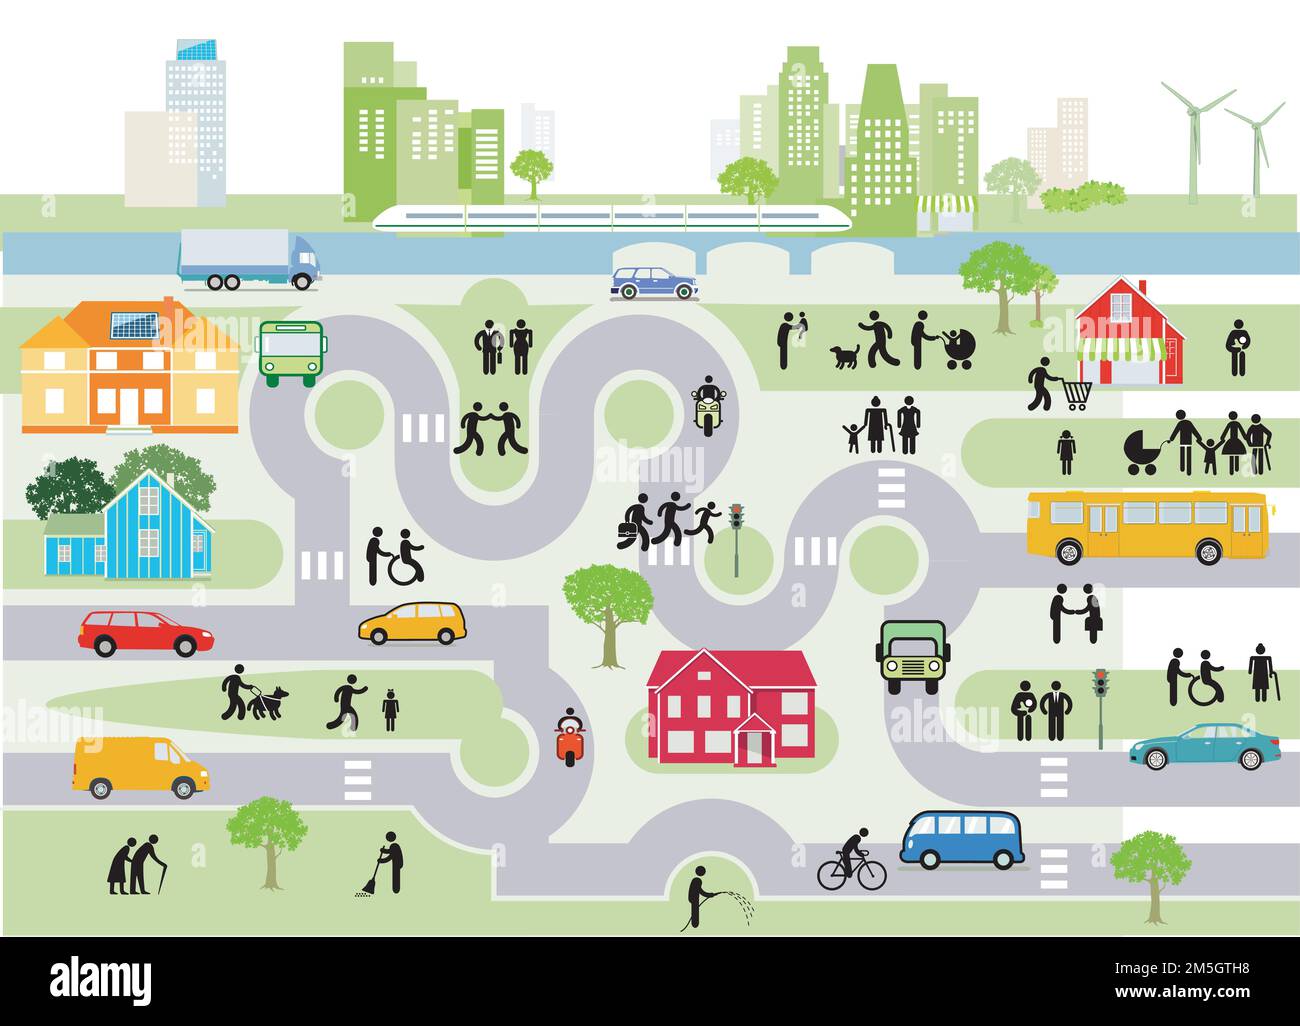 Panoramica della città e del paese con traffico e case con energia alternativa, illustrazione delle informazioni Illustrazione Vettoriale